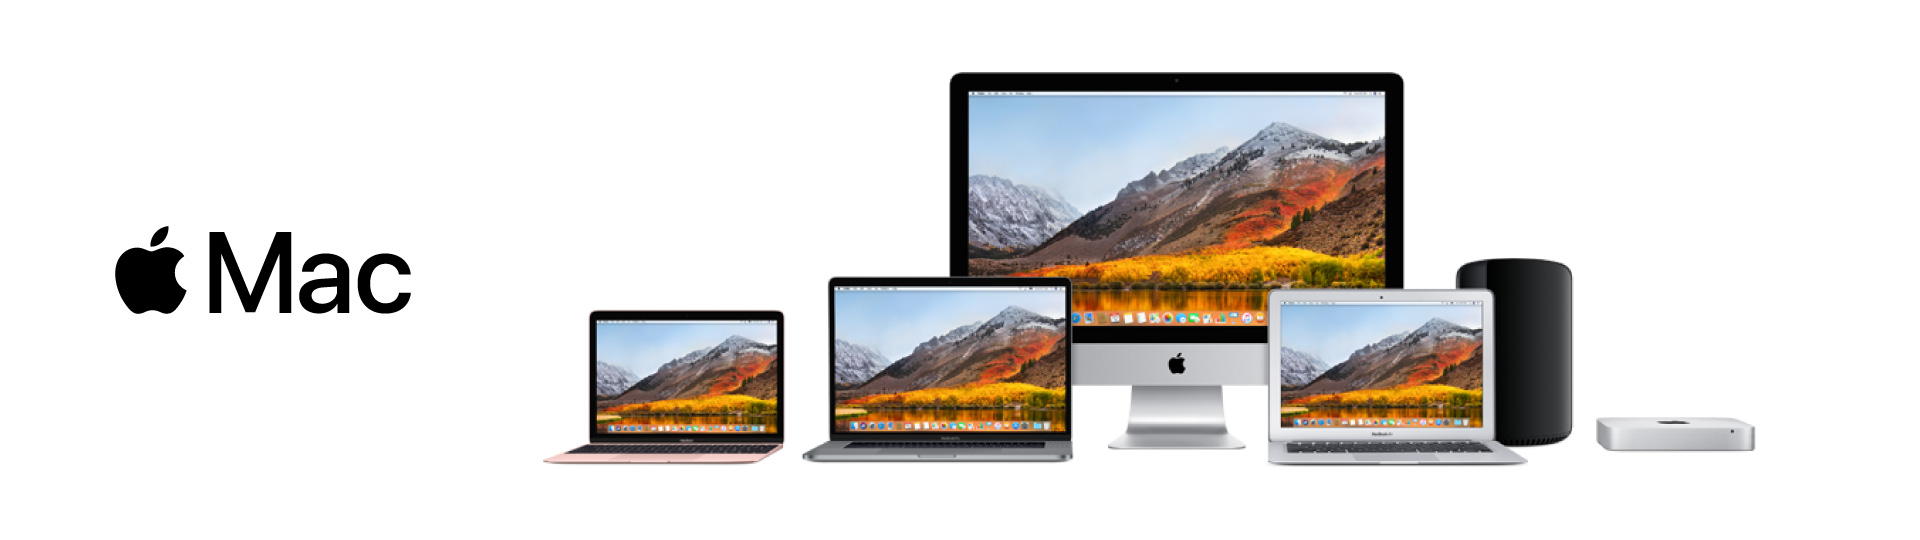 iMac, MacBook, Mac mini, Mac Pro